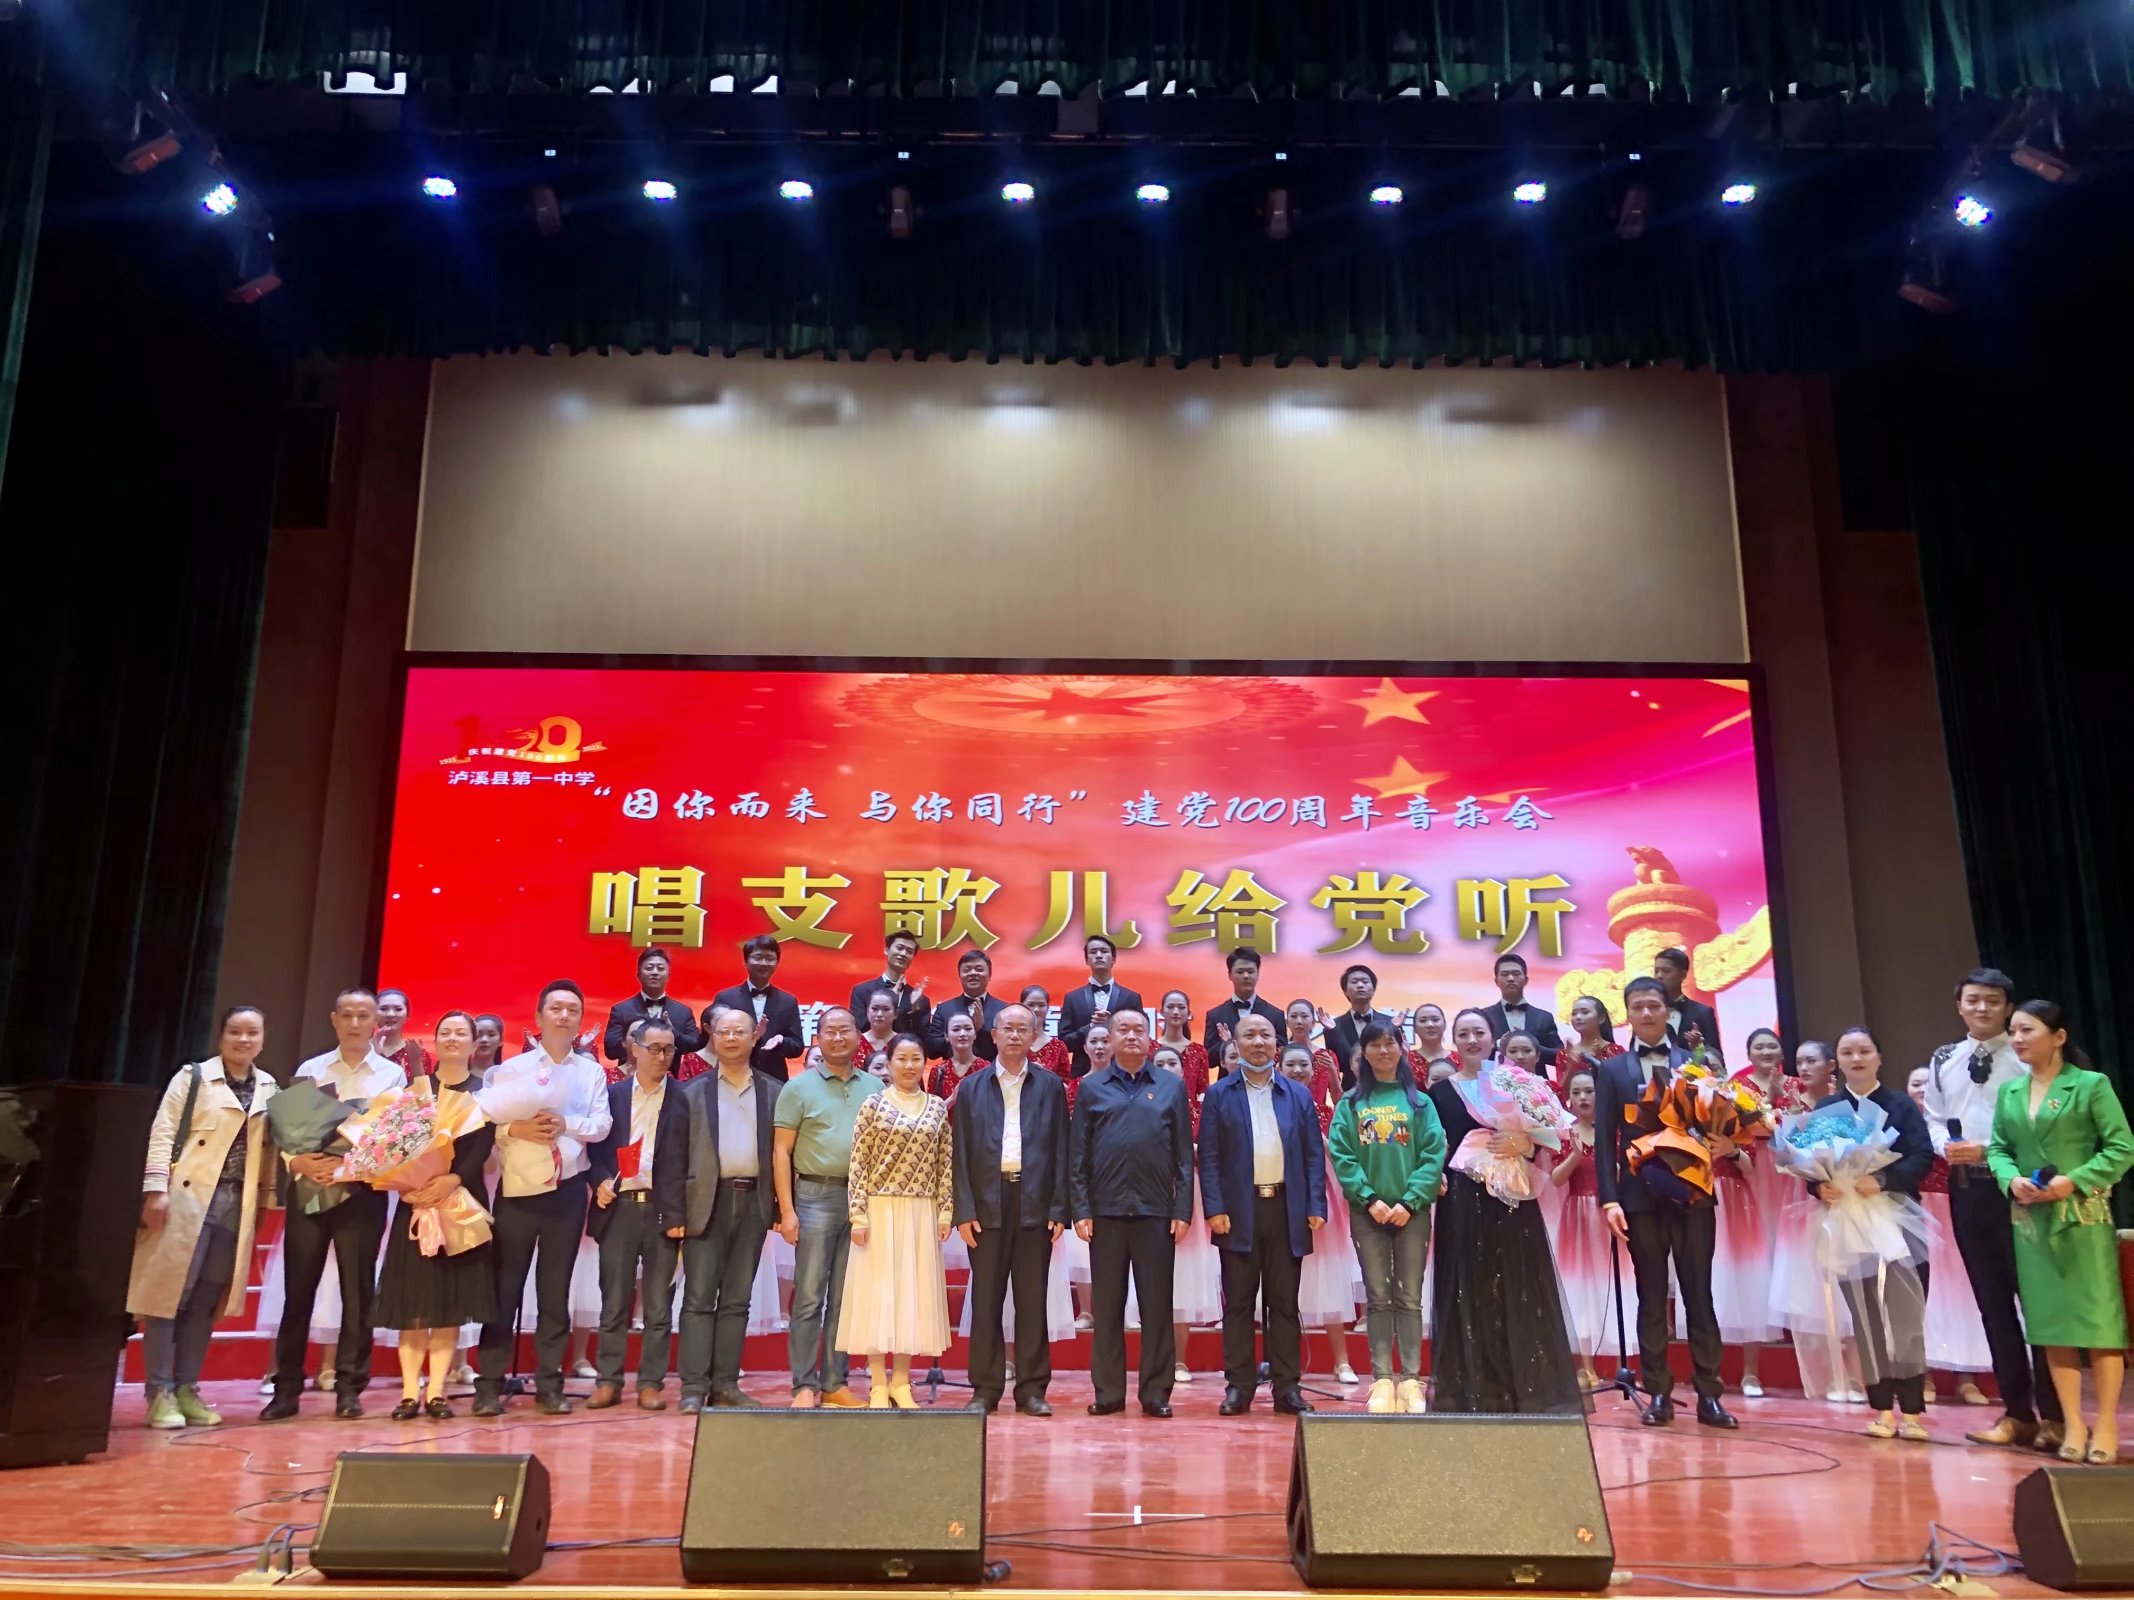 香港二四六开奖免费资料大全一举办庆祝建党100周年合唱音乐会